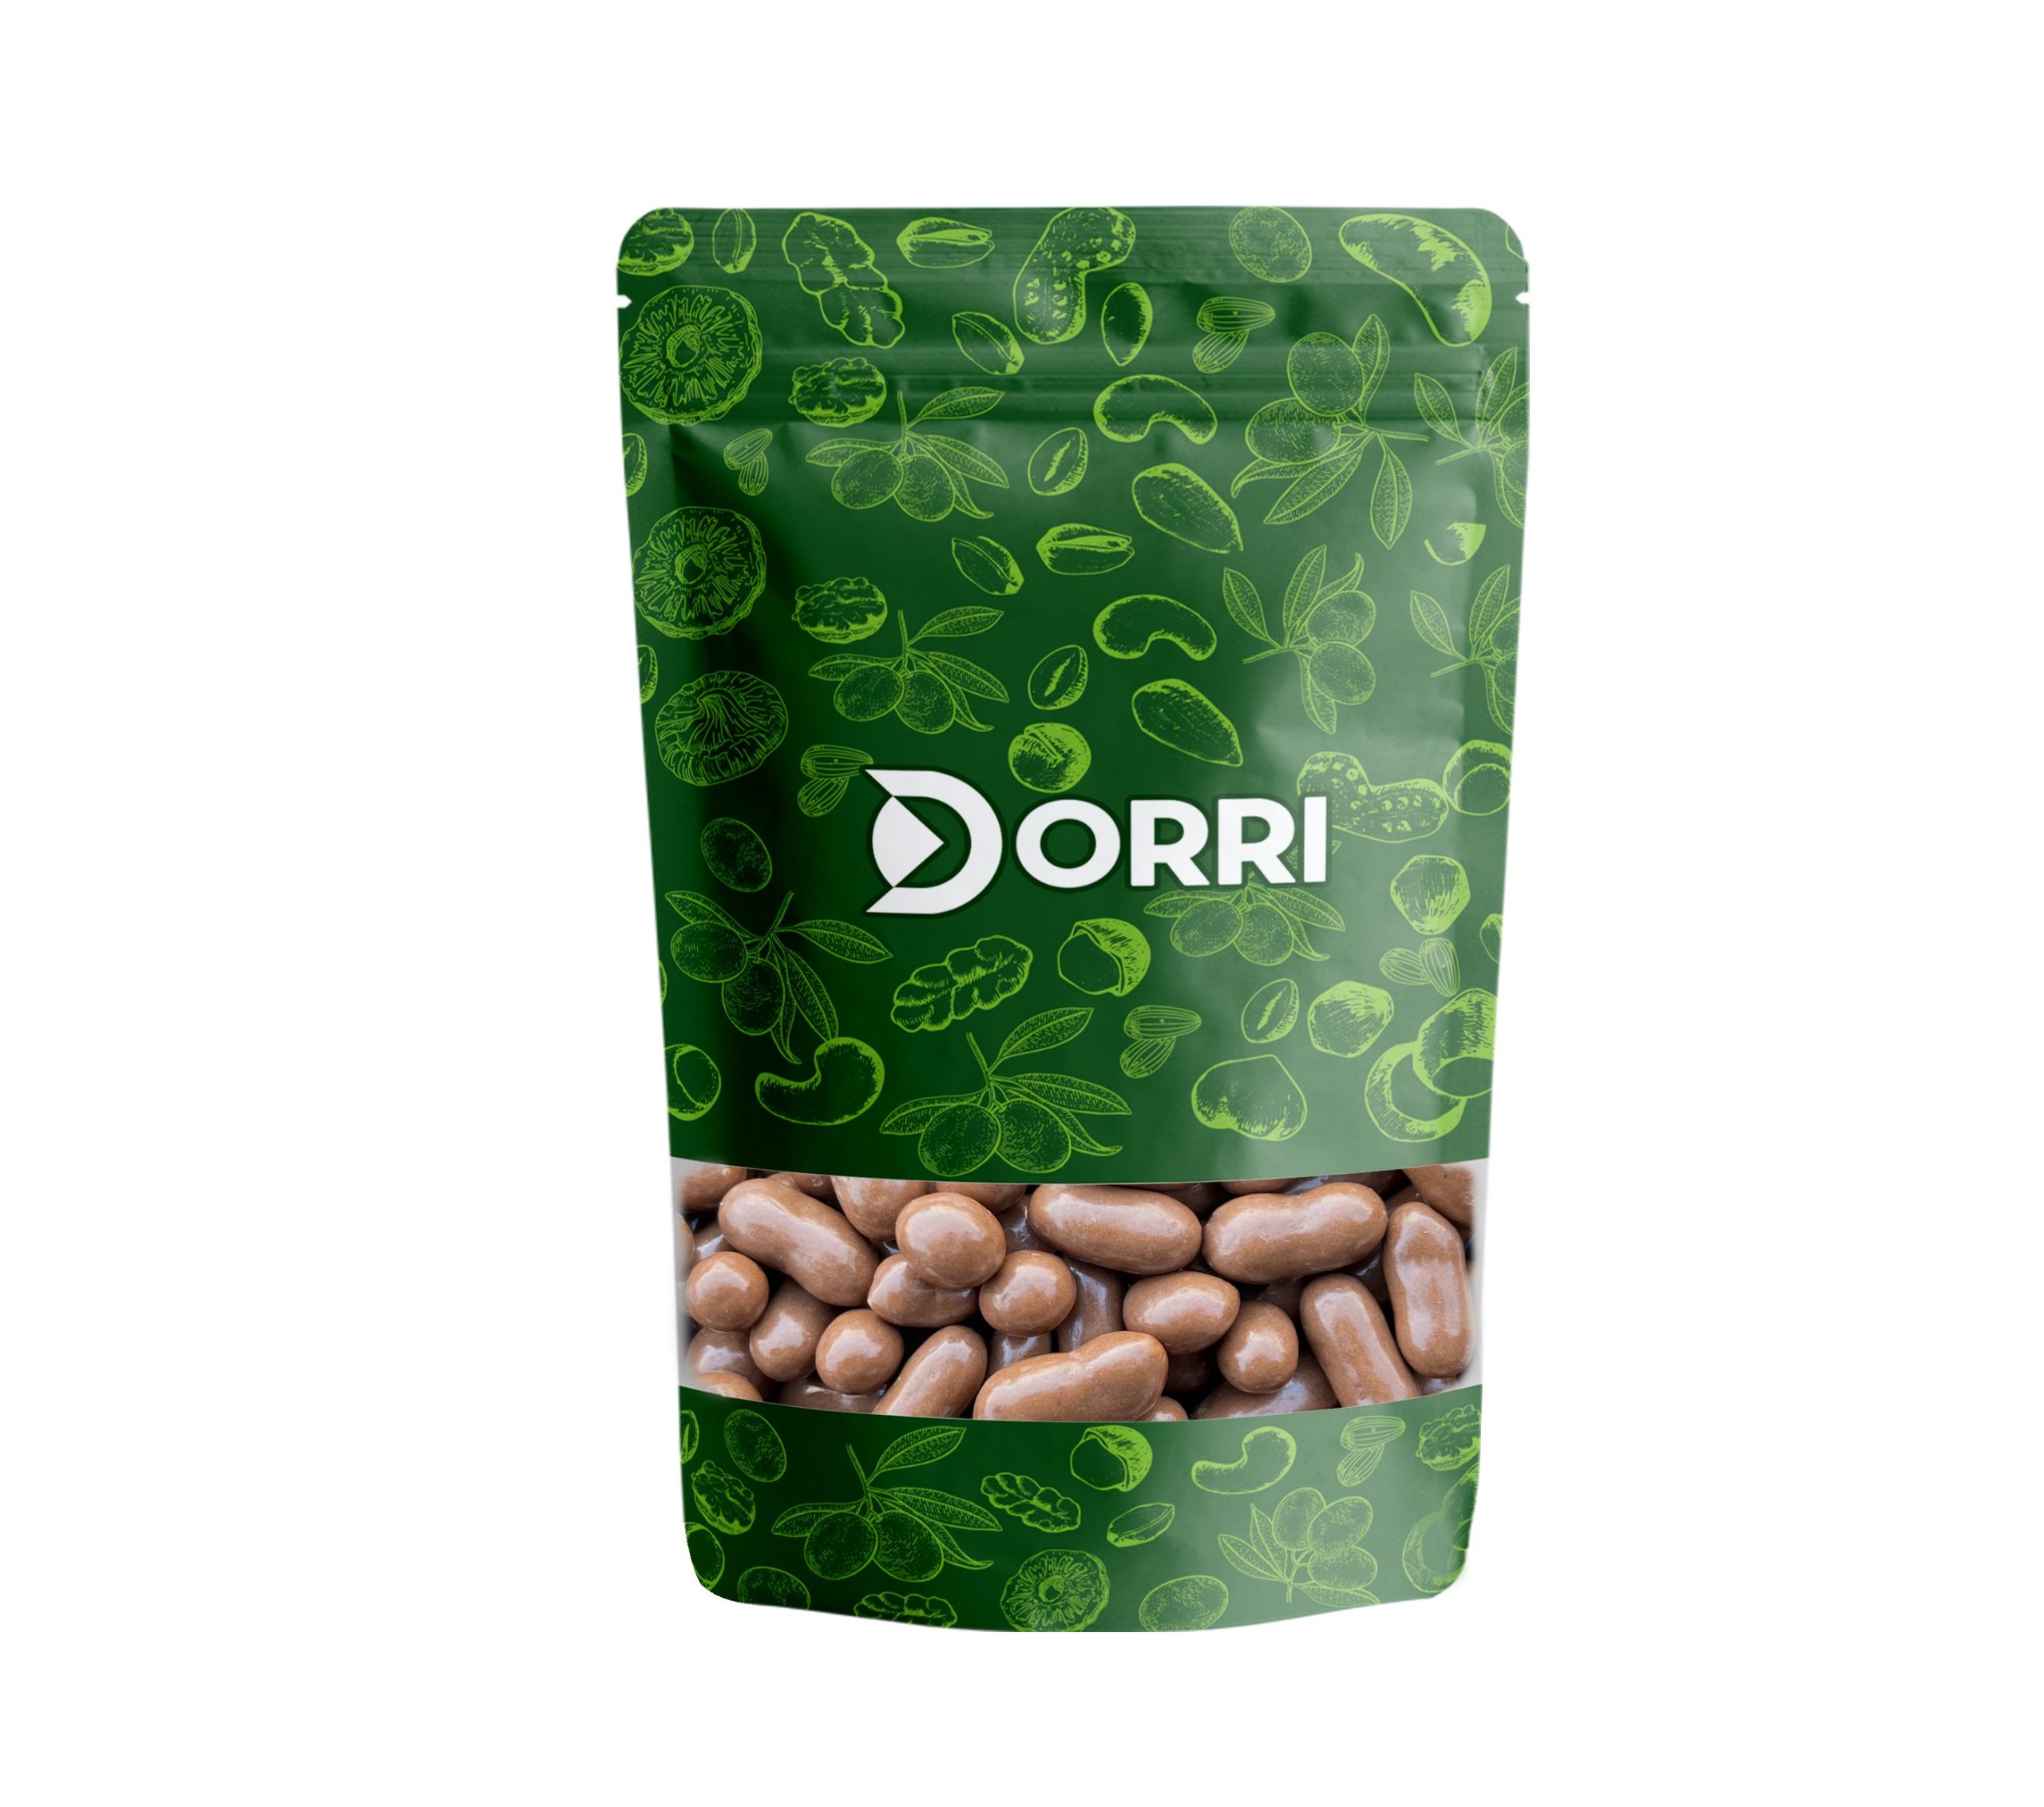 Dorri - Milk Chocolate Orange Peel